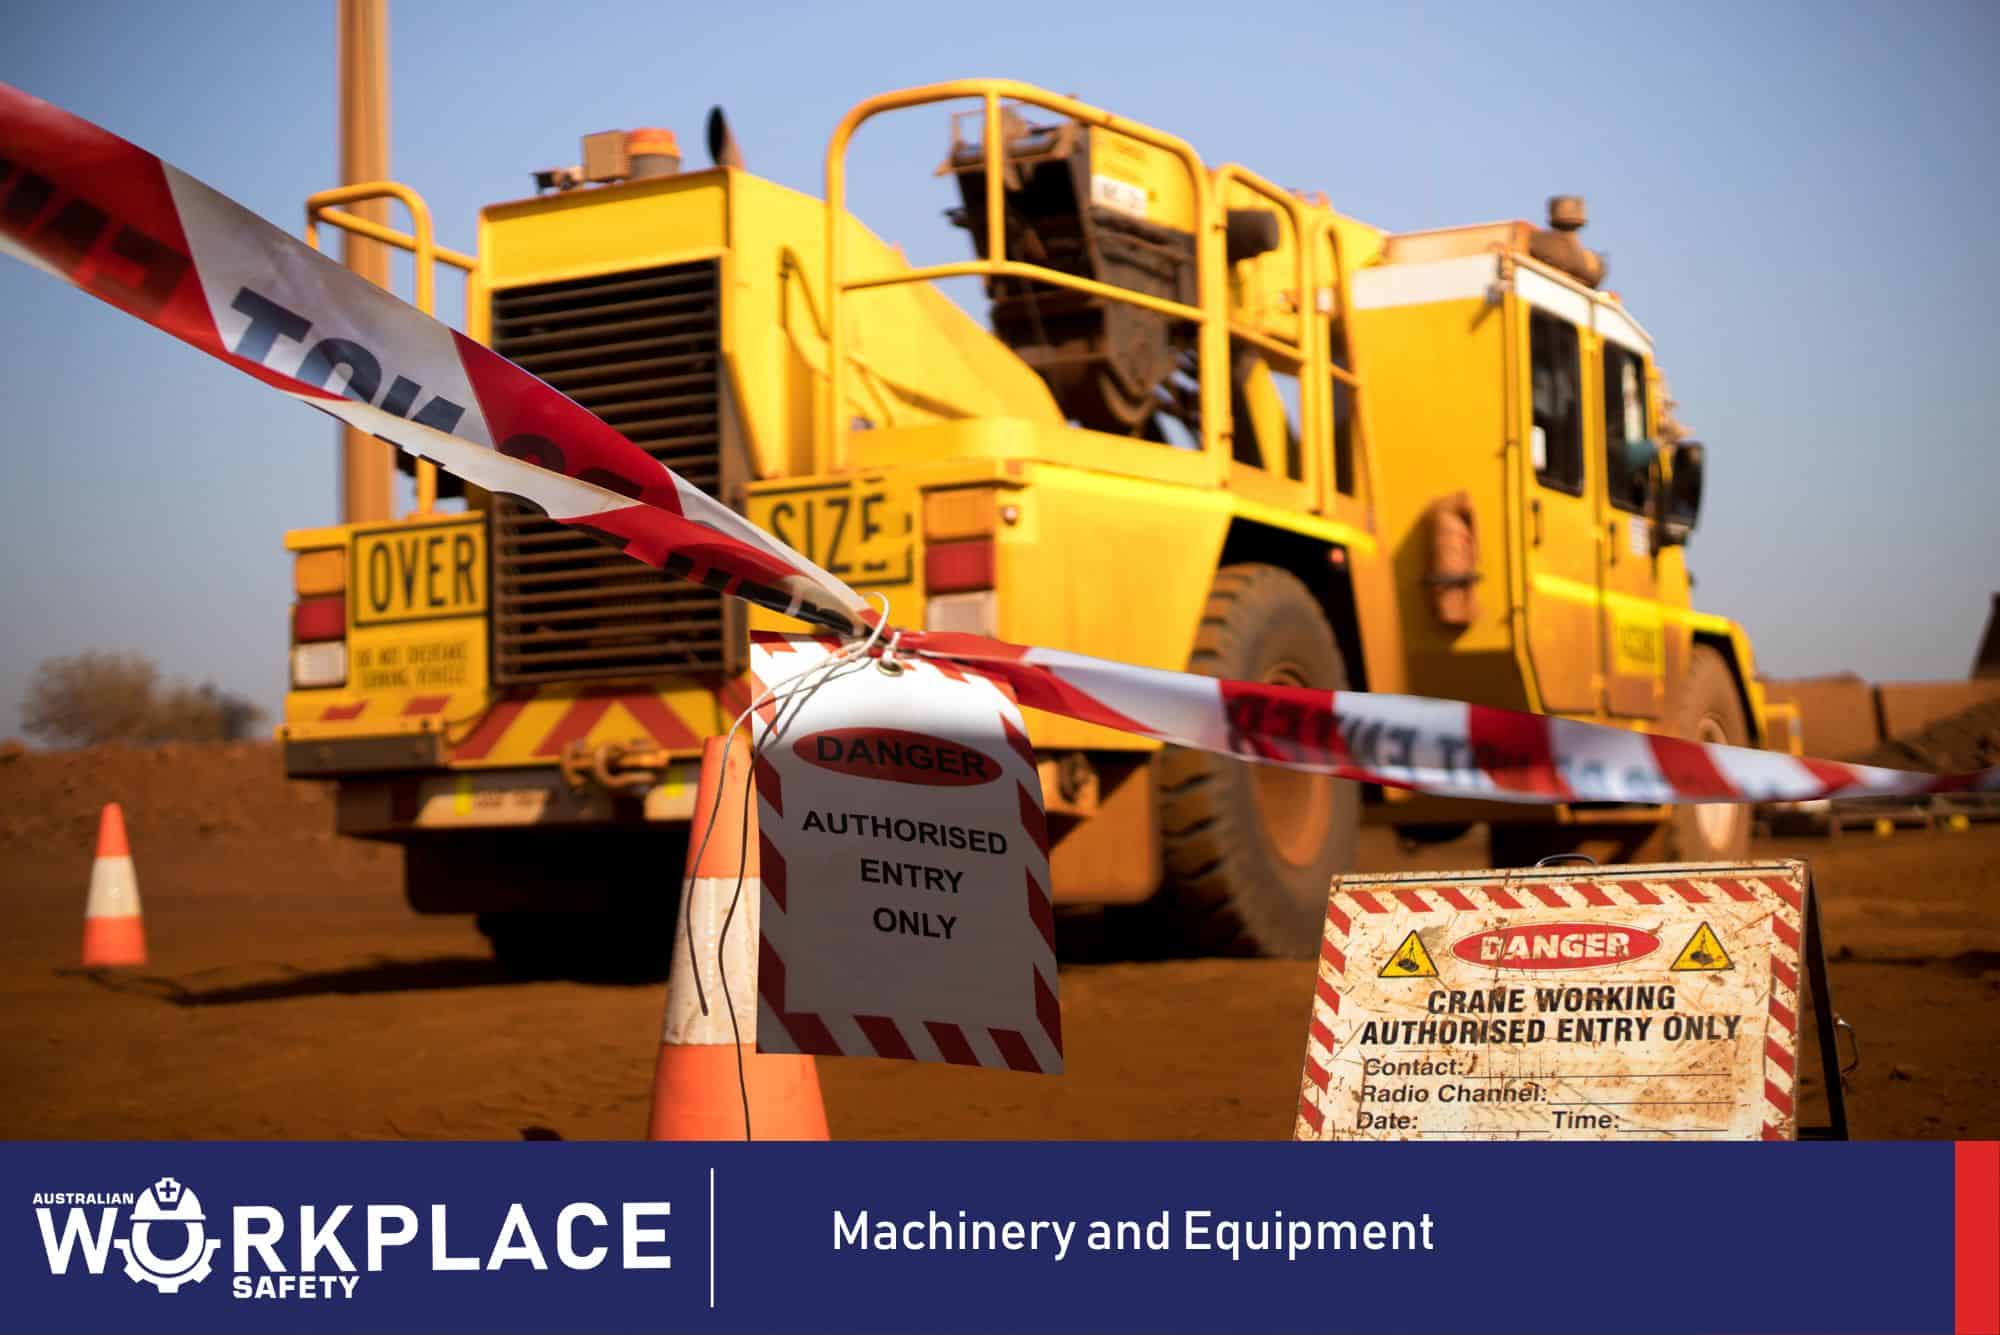  Machinery and Equipment